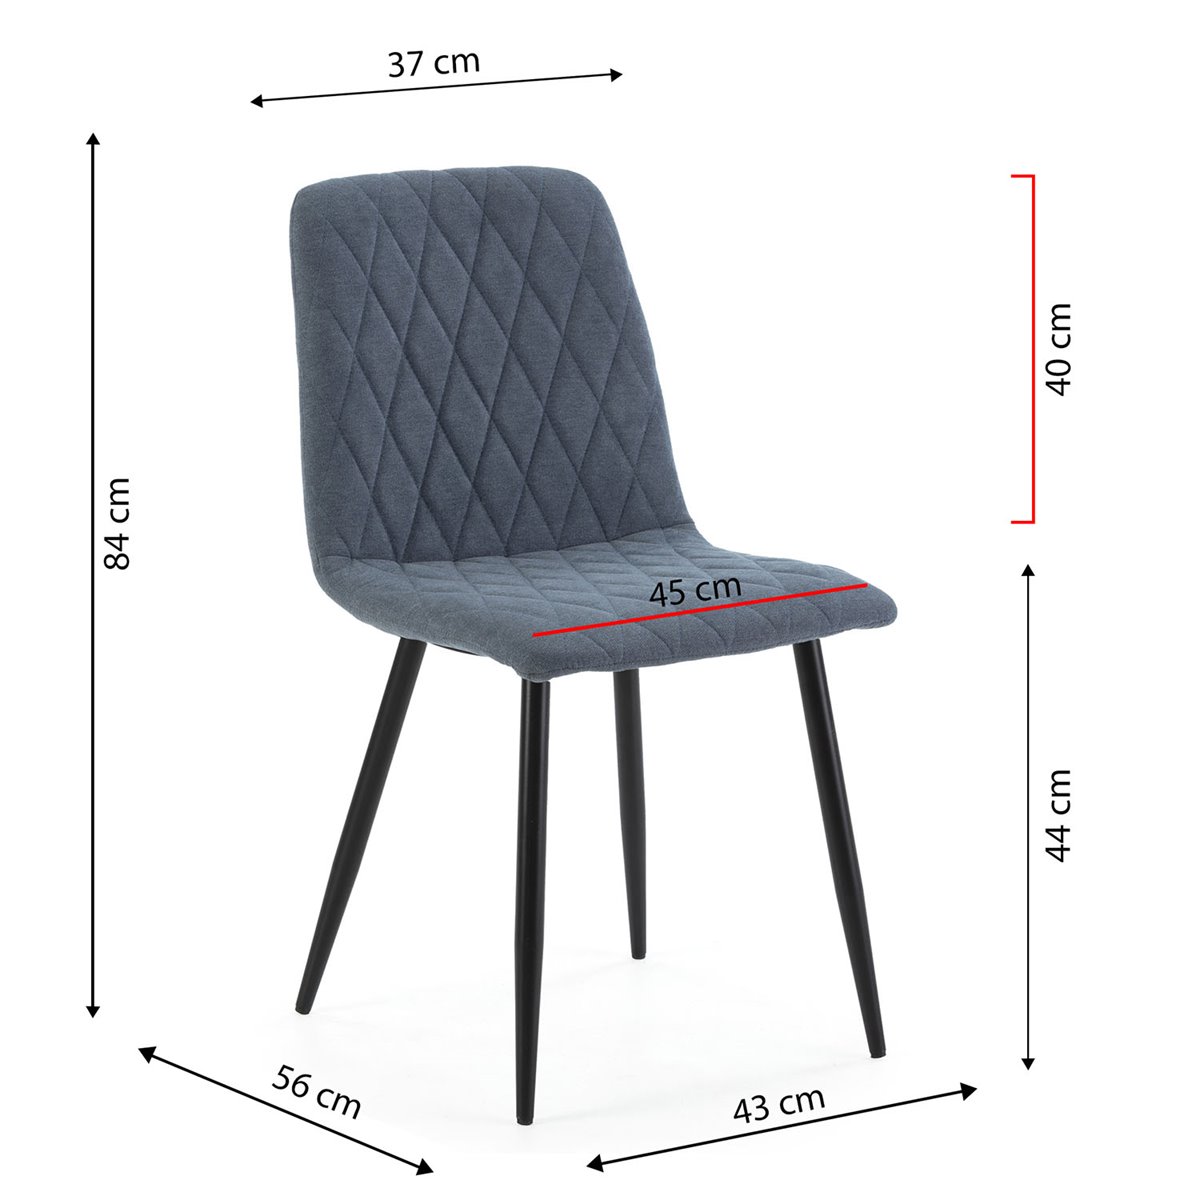 Pack 4 sillas de comedor Hall Marrón, Gris 44,5 x 84 x 54,5 cm - Conforama